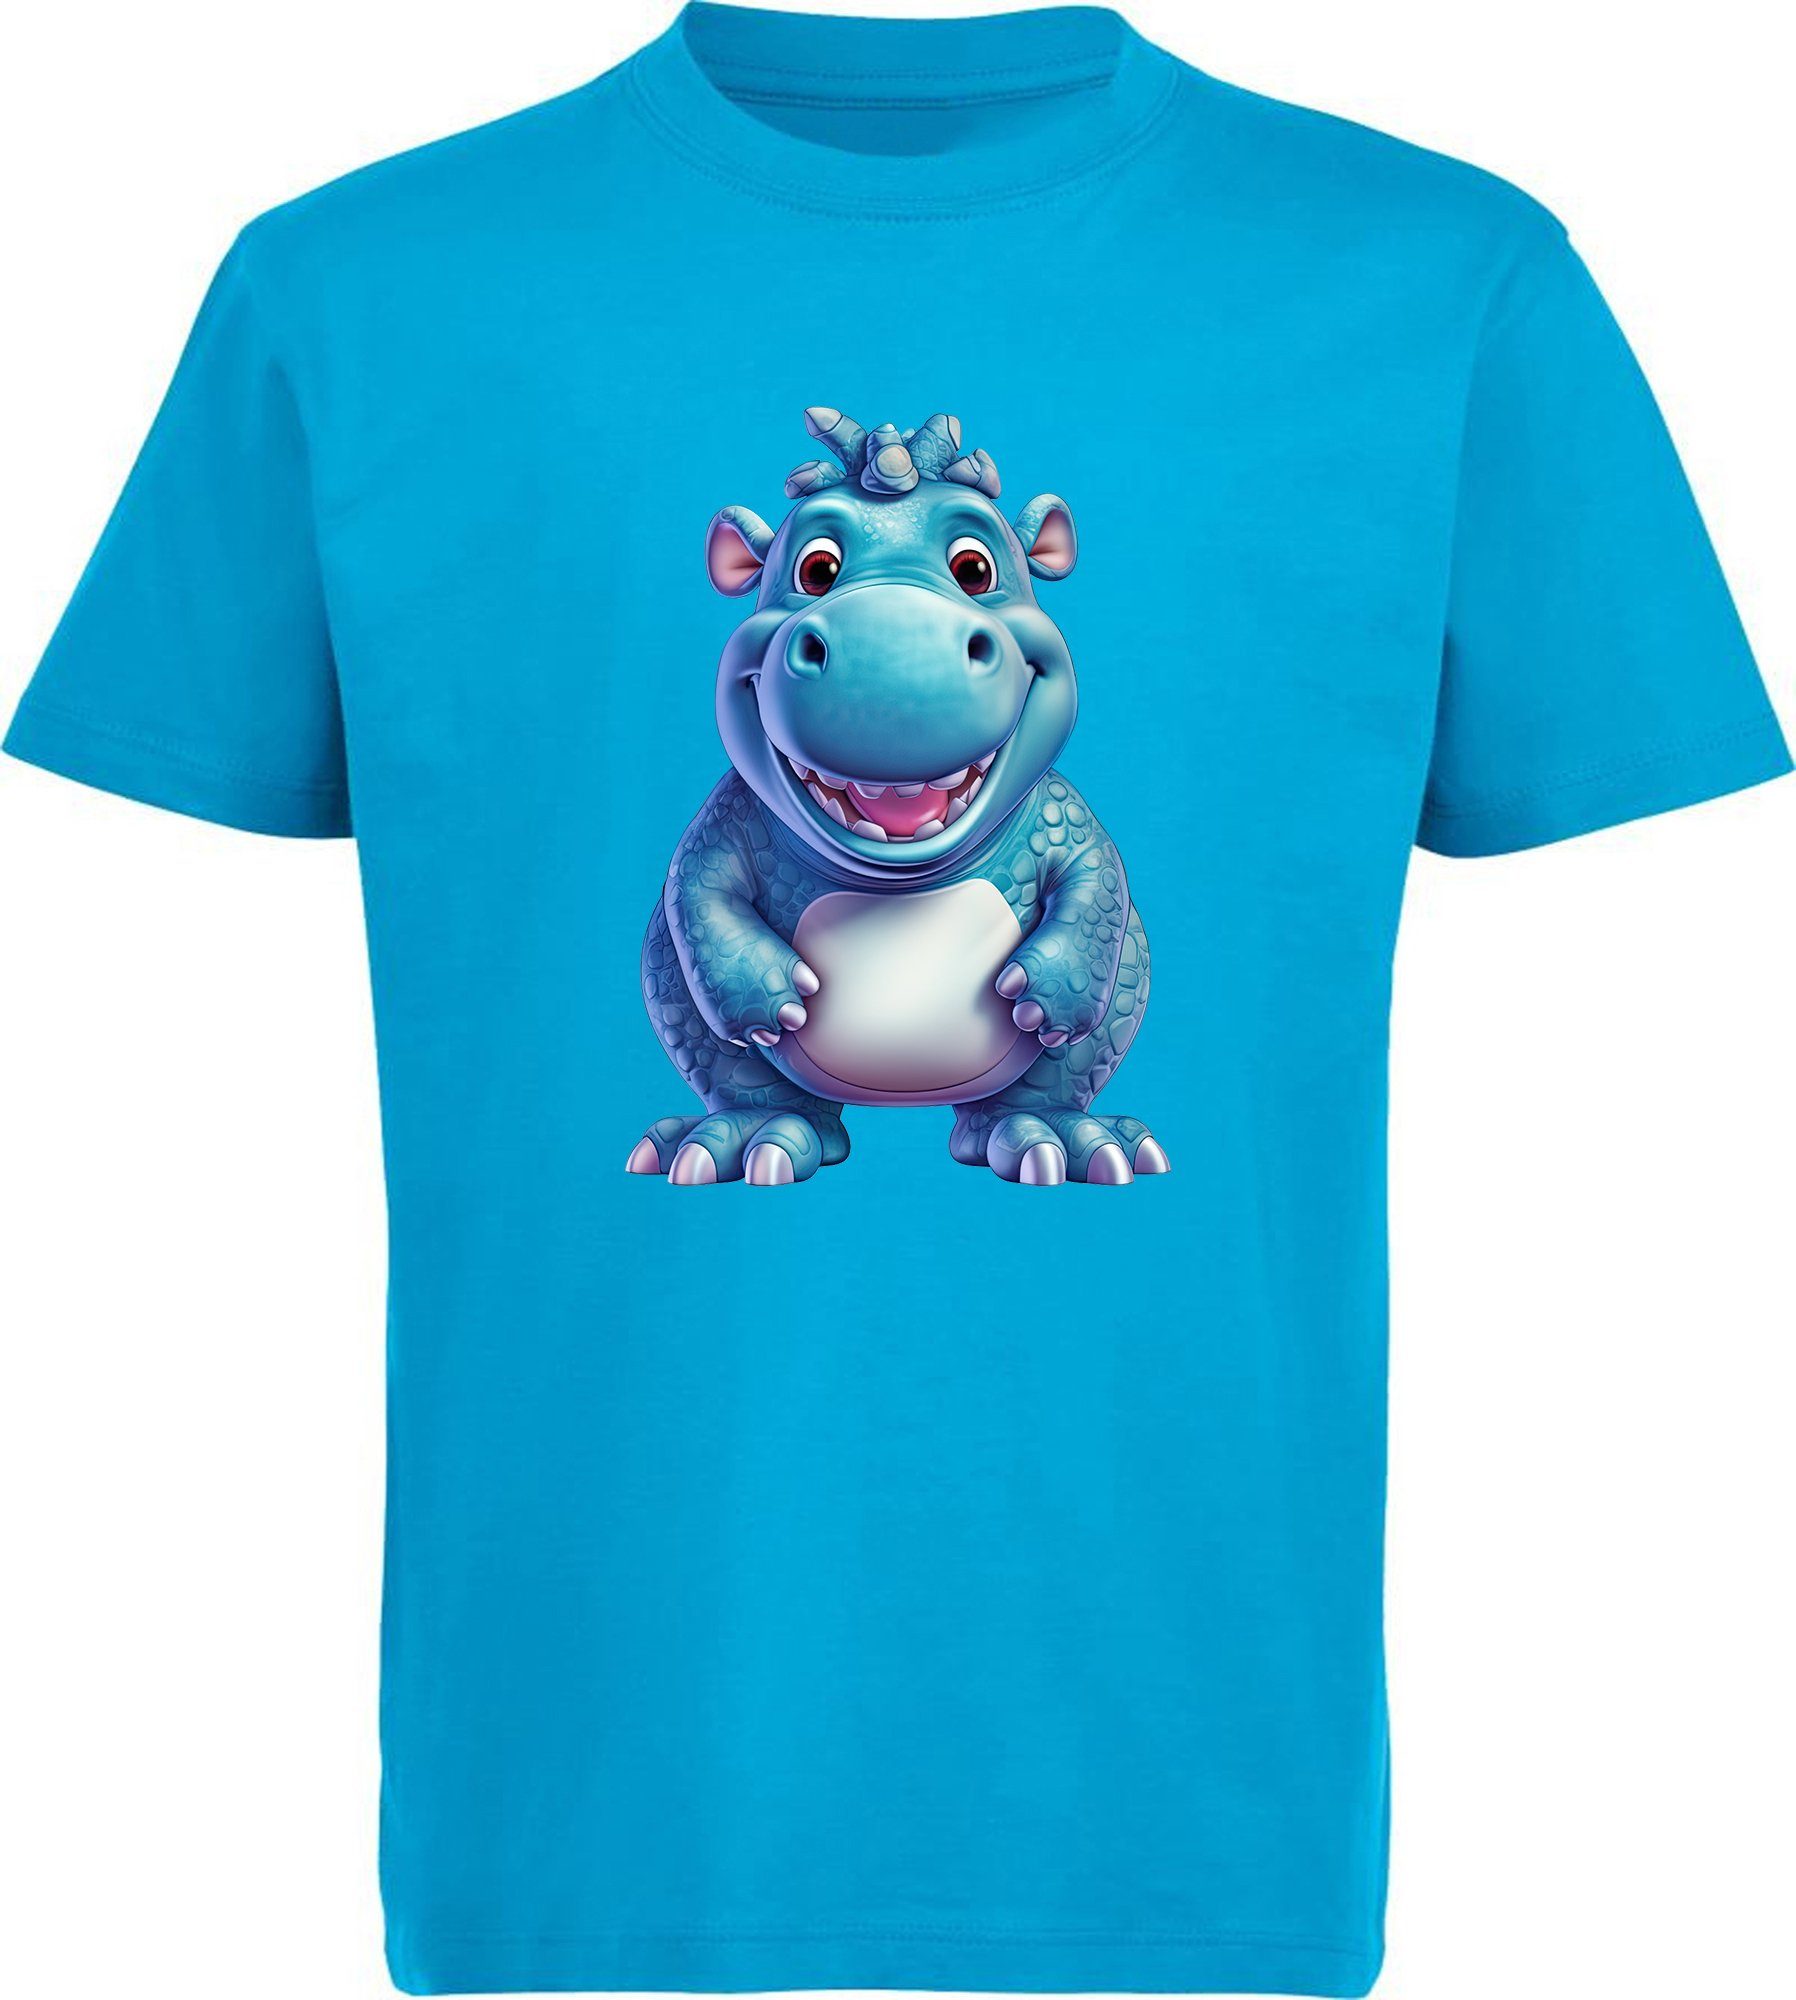 MyDesign24 T-Shirt Kinder Wildtier Print Shirt bedruckt - Baby Hippo Nilpferd Baumwollshirt mit Aufdruck, i274 aqua blau